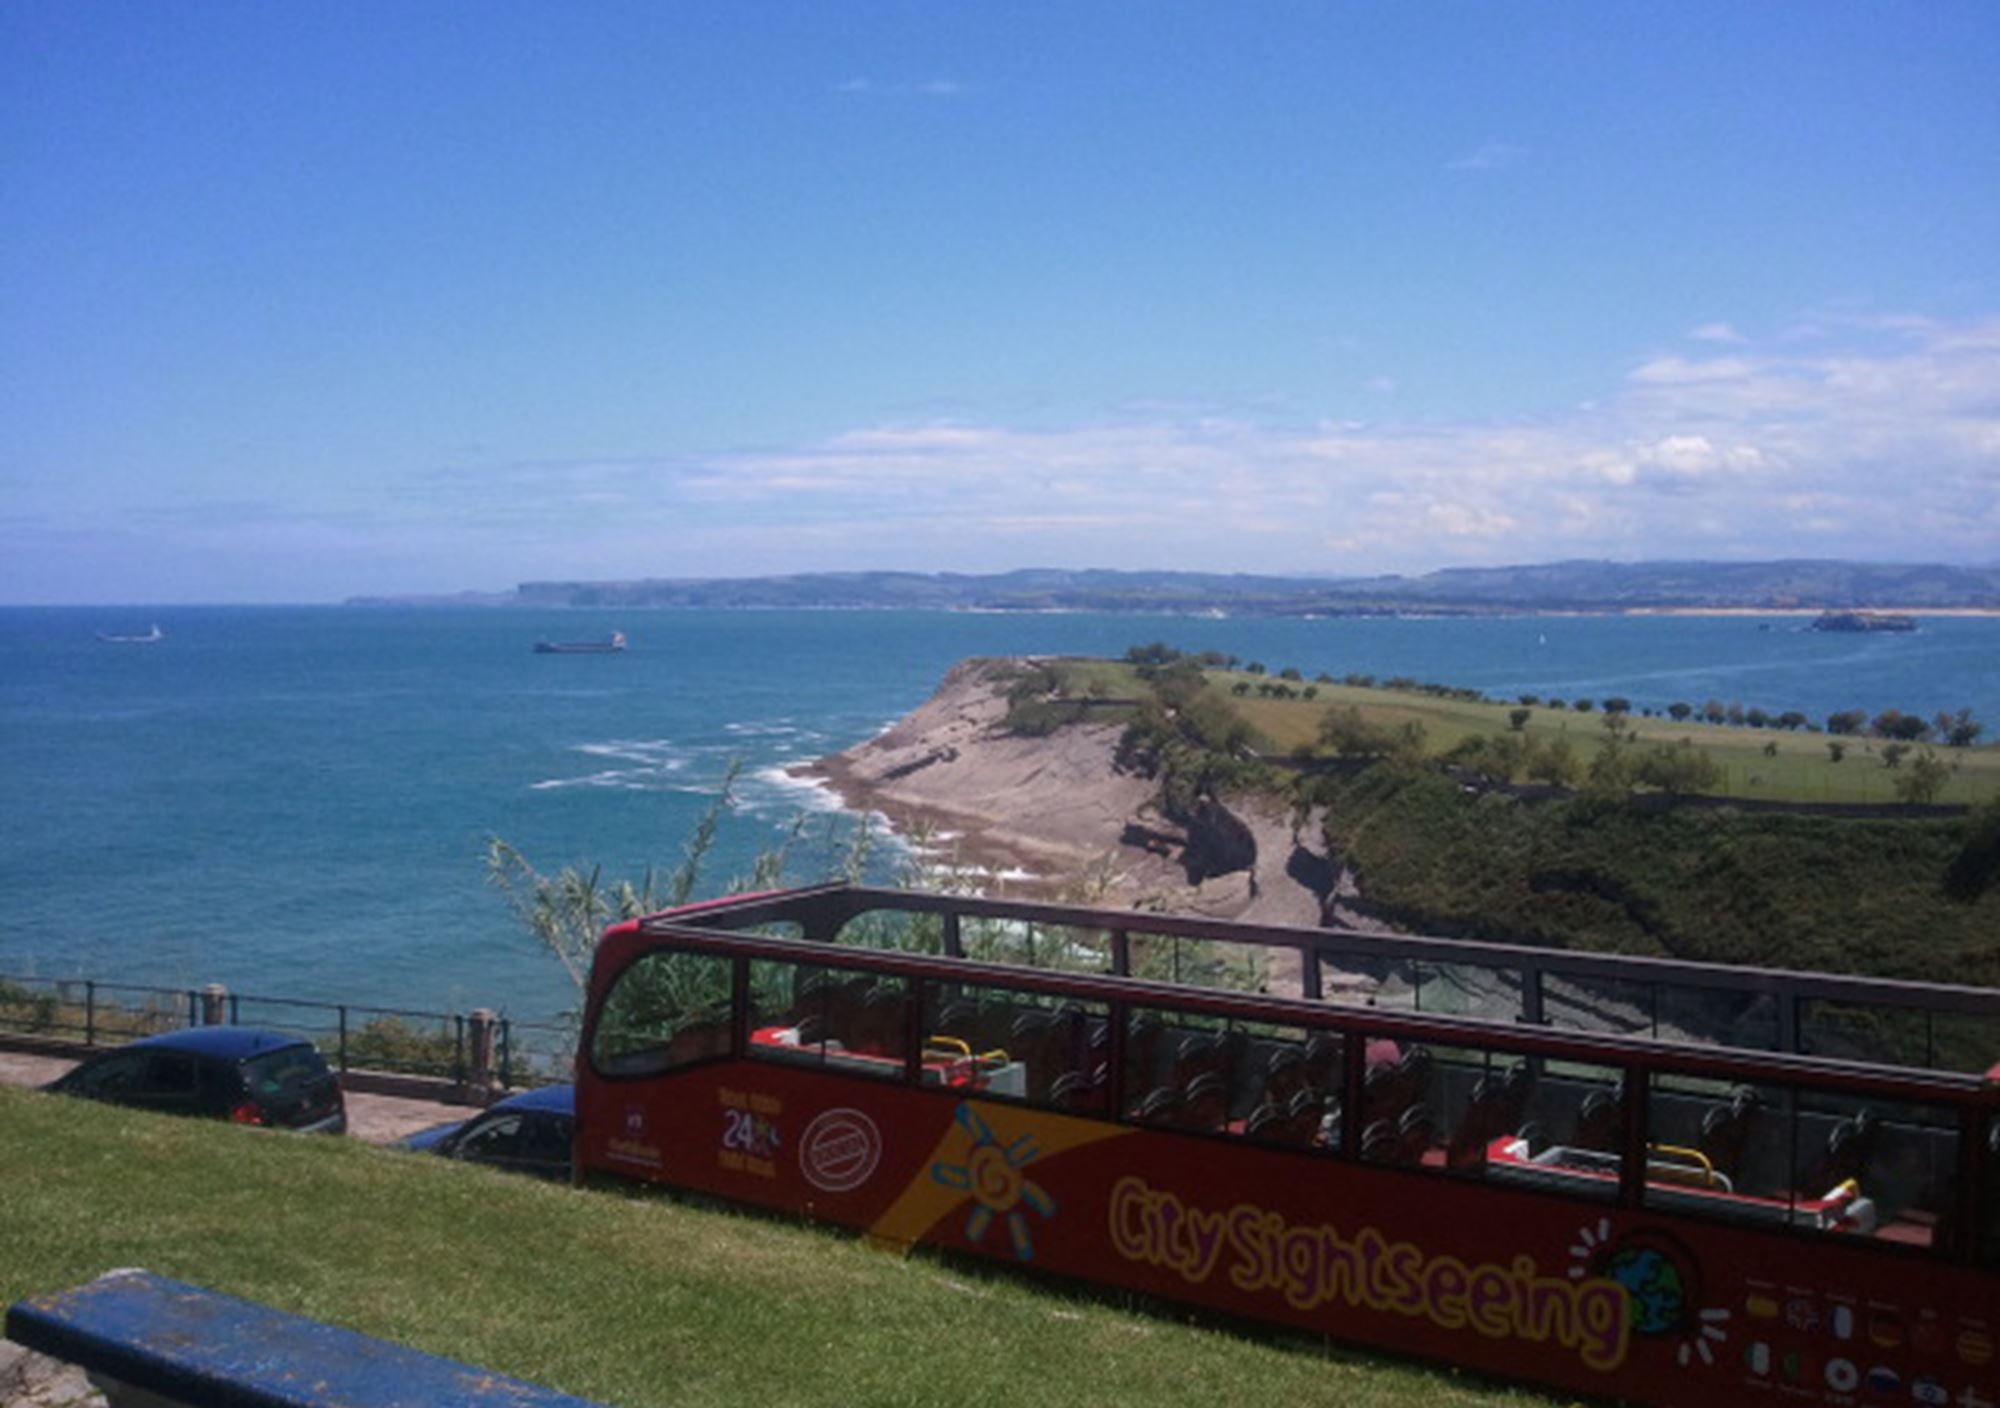 reservieren tickets besucht Touren Fahrkarte karte Touristikbus City Sightseeing Santander